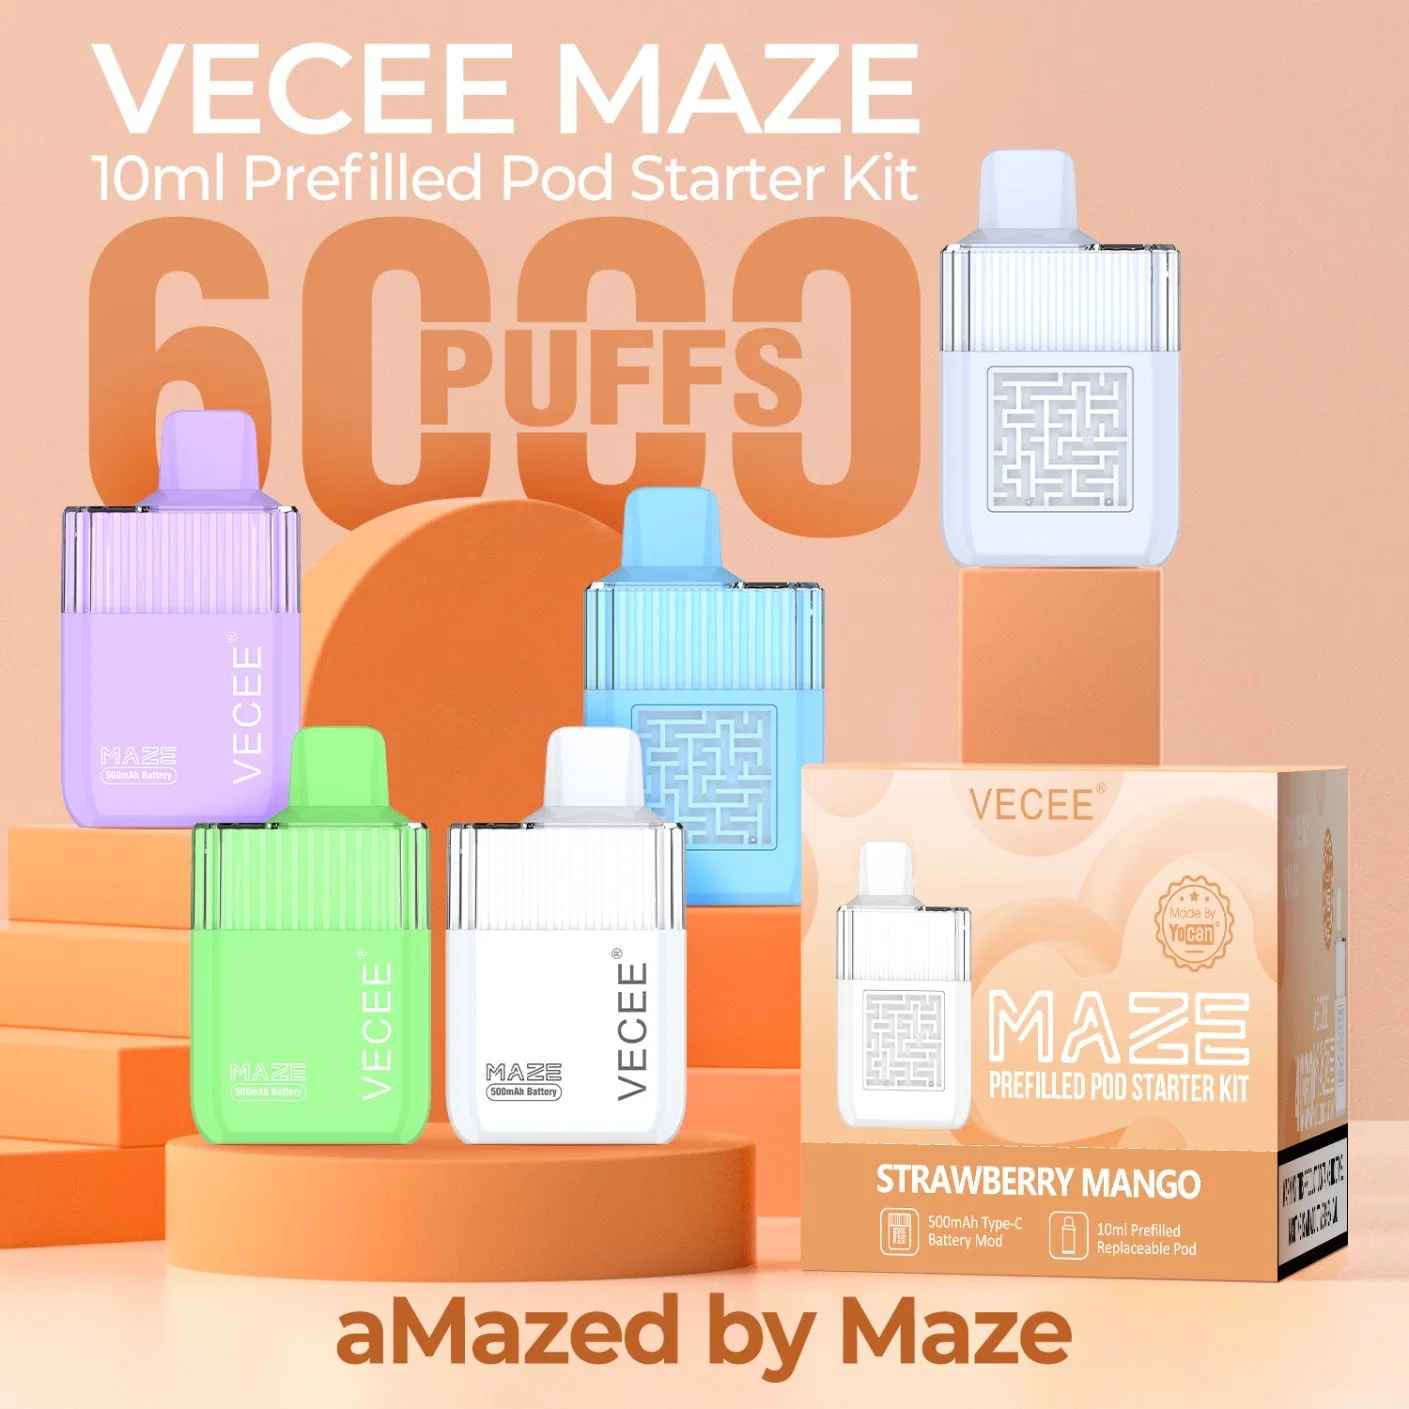 2023 Vecee Maze Rechargeable 6000 Puffs Wholesale/Supplier Vape Pen Puff Replaceable Vape Puff Pen Hookah Vape Juice Factory E Cigarette